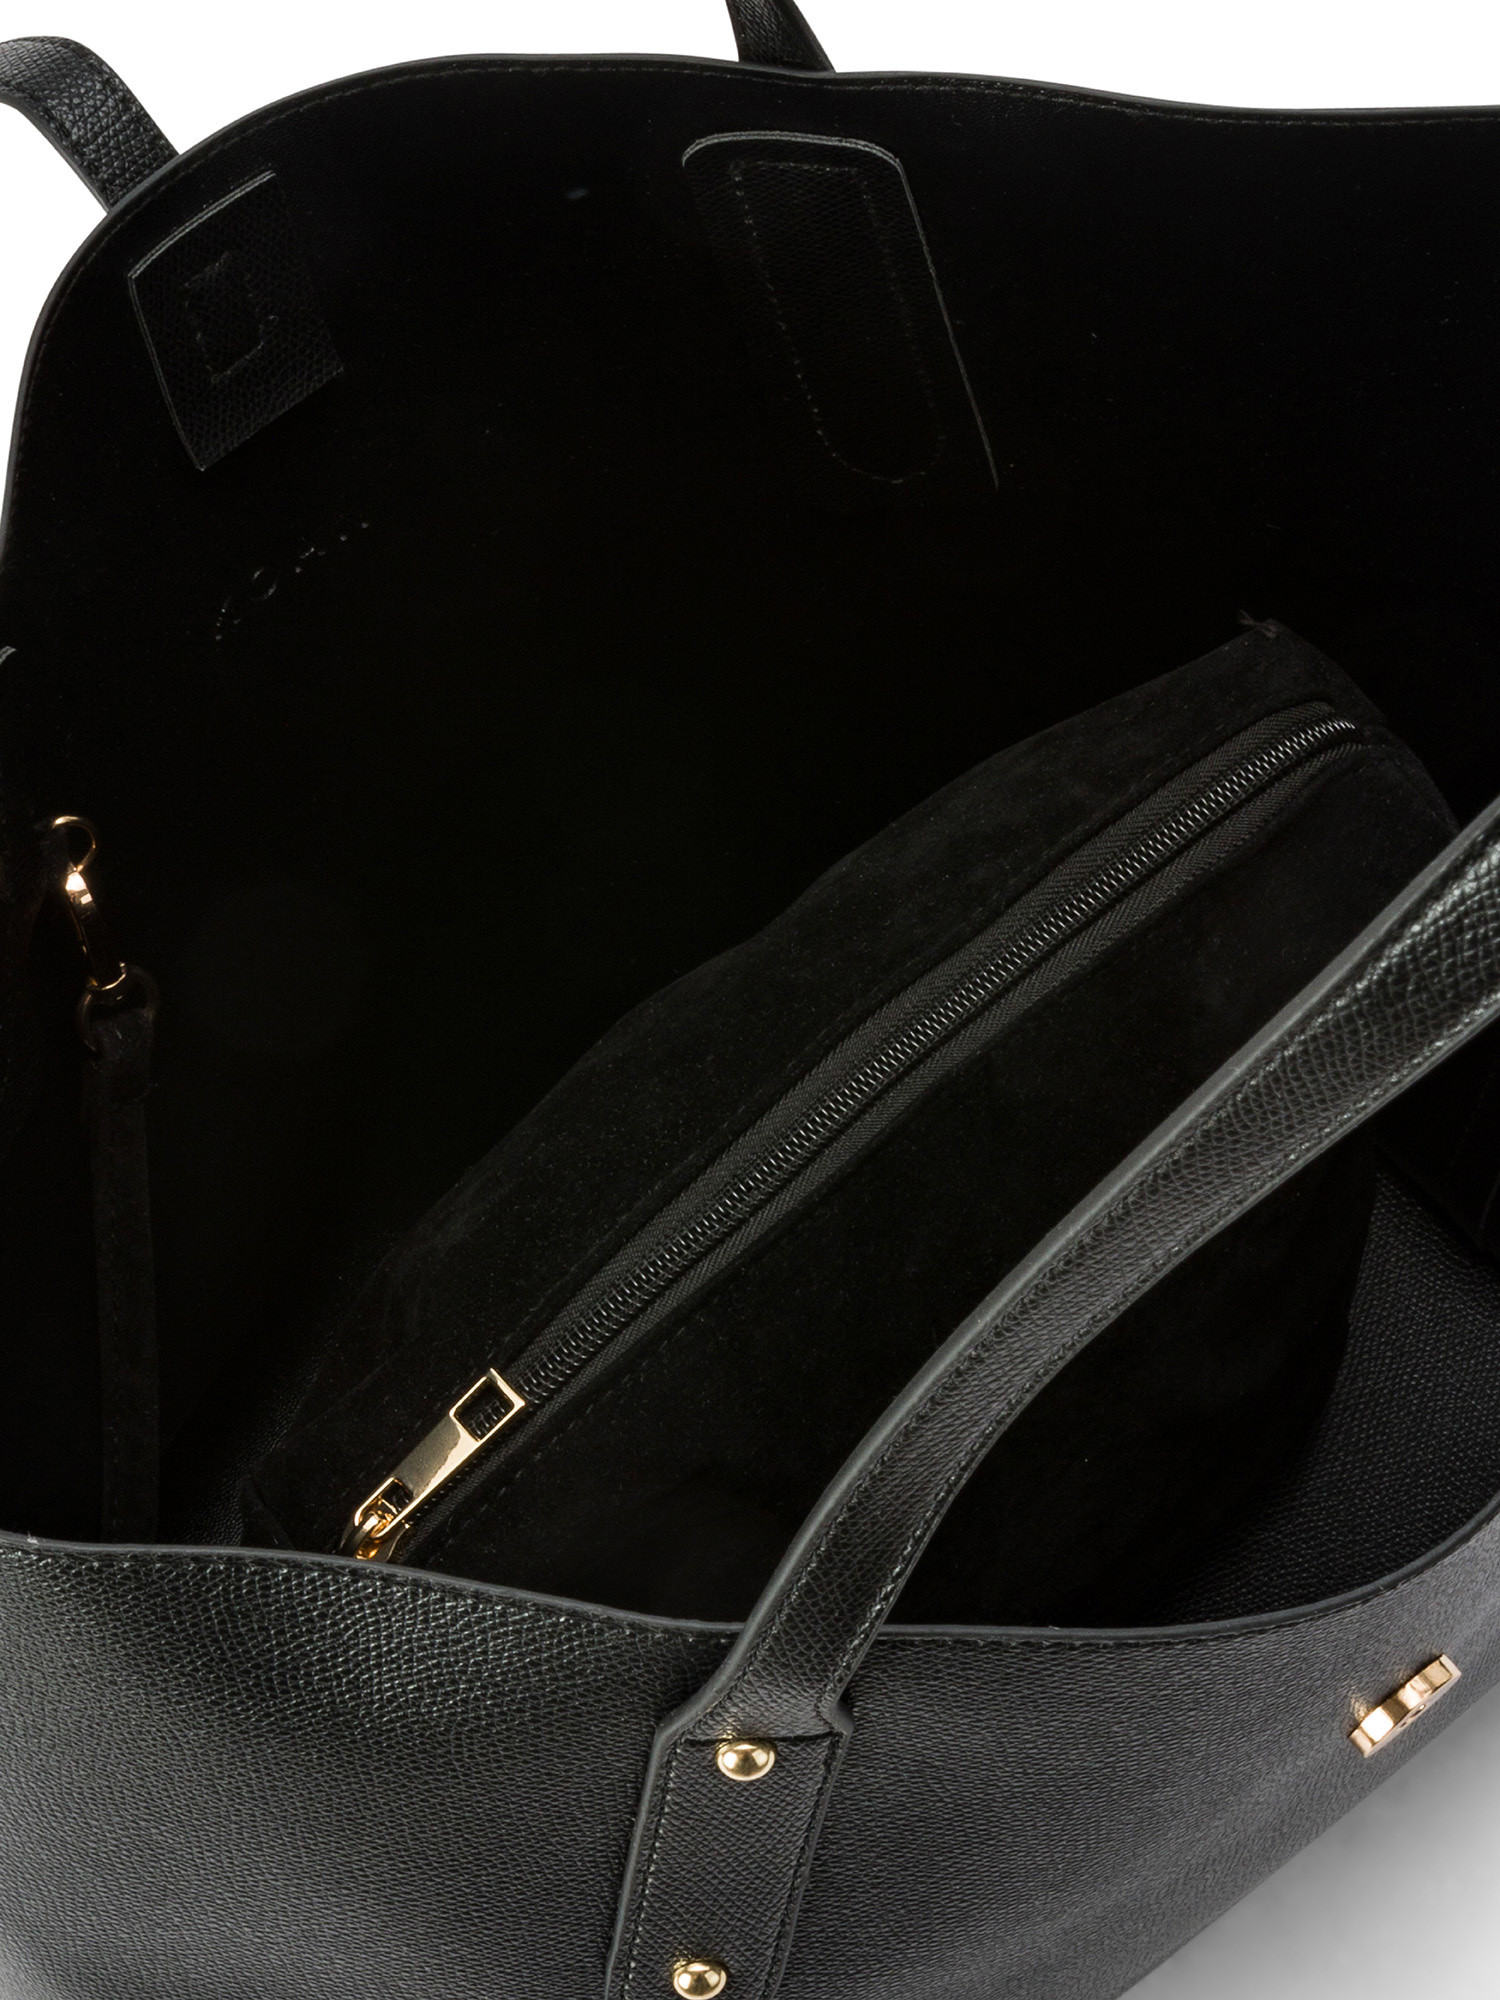 Koan - Shopping bag, Black, large image number 2